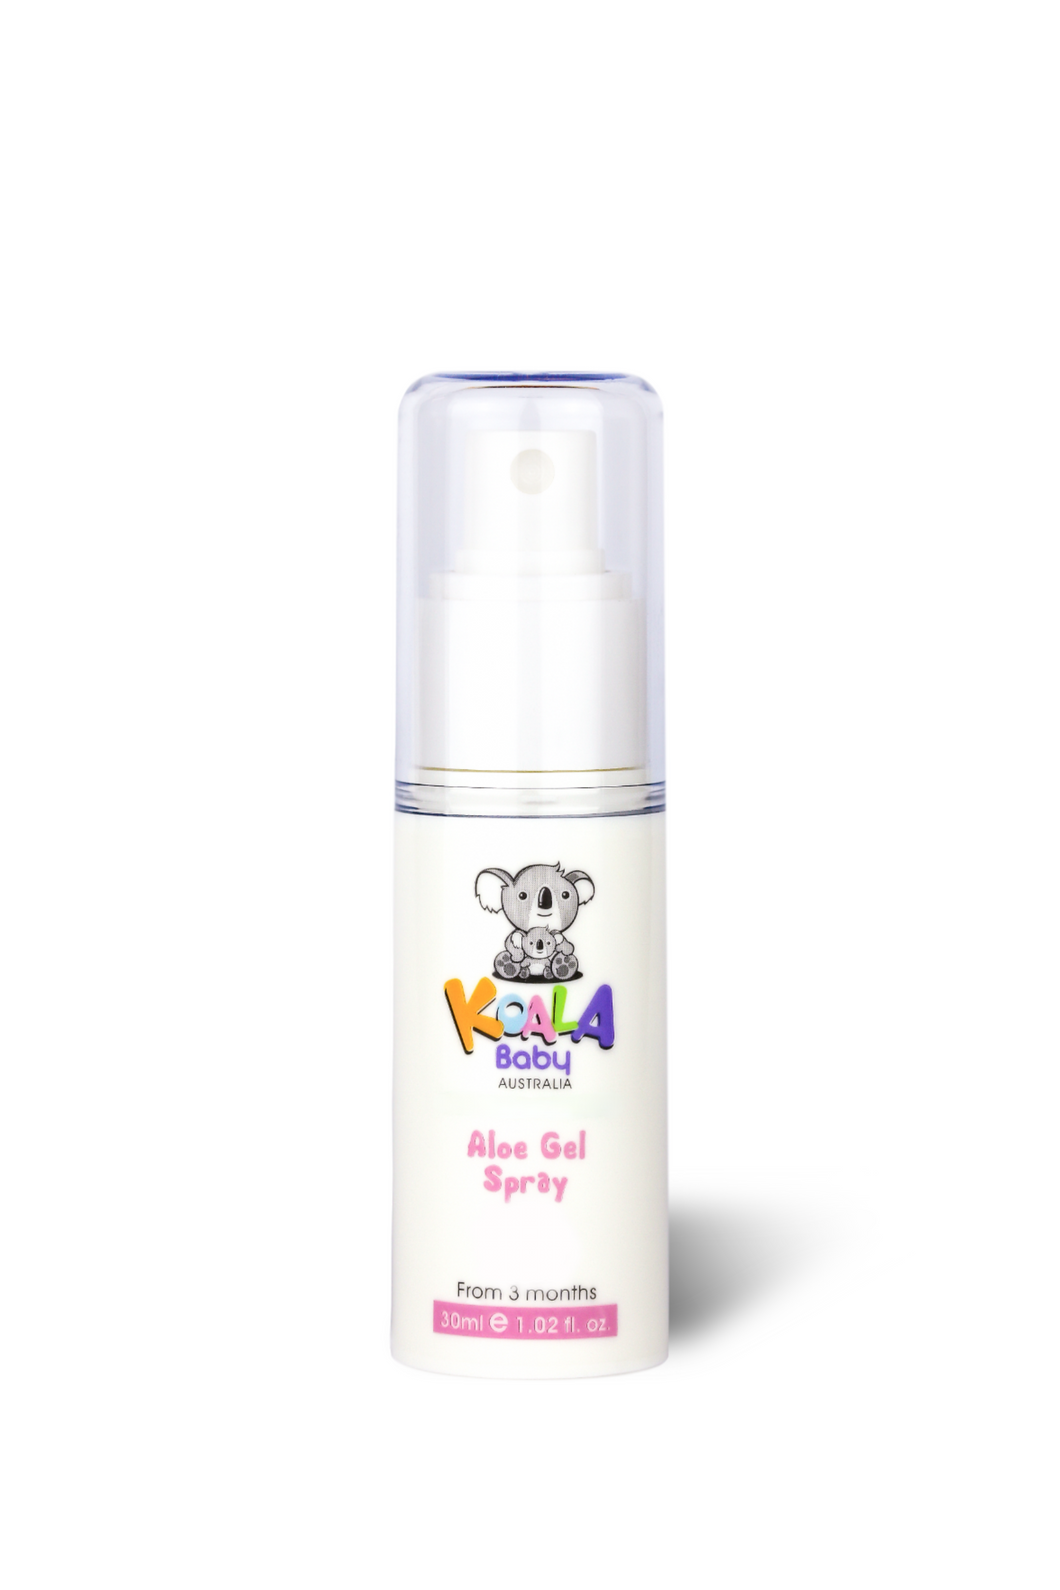 Koala Baby Spray